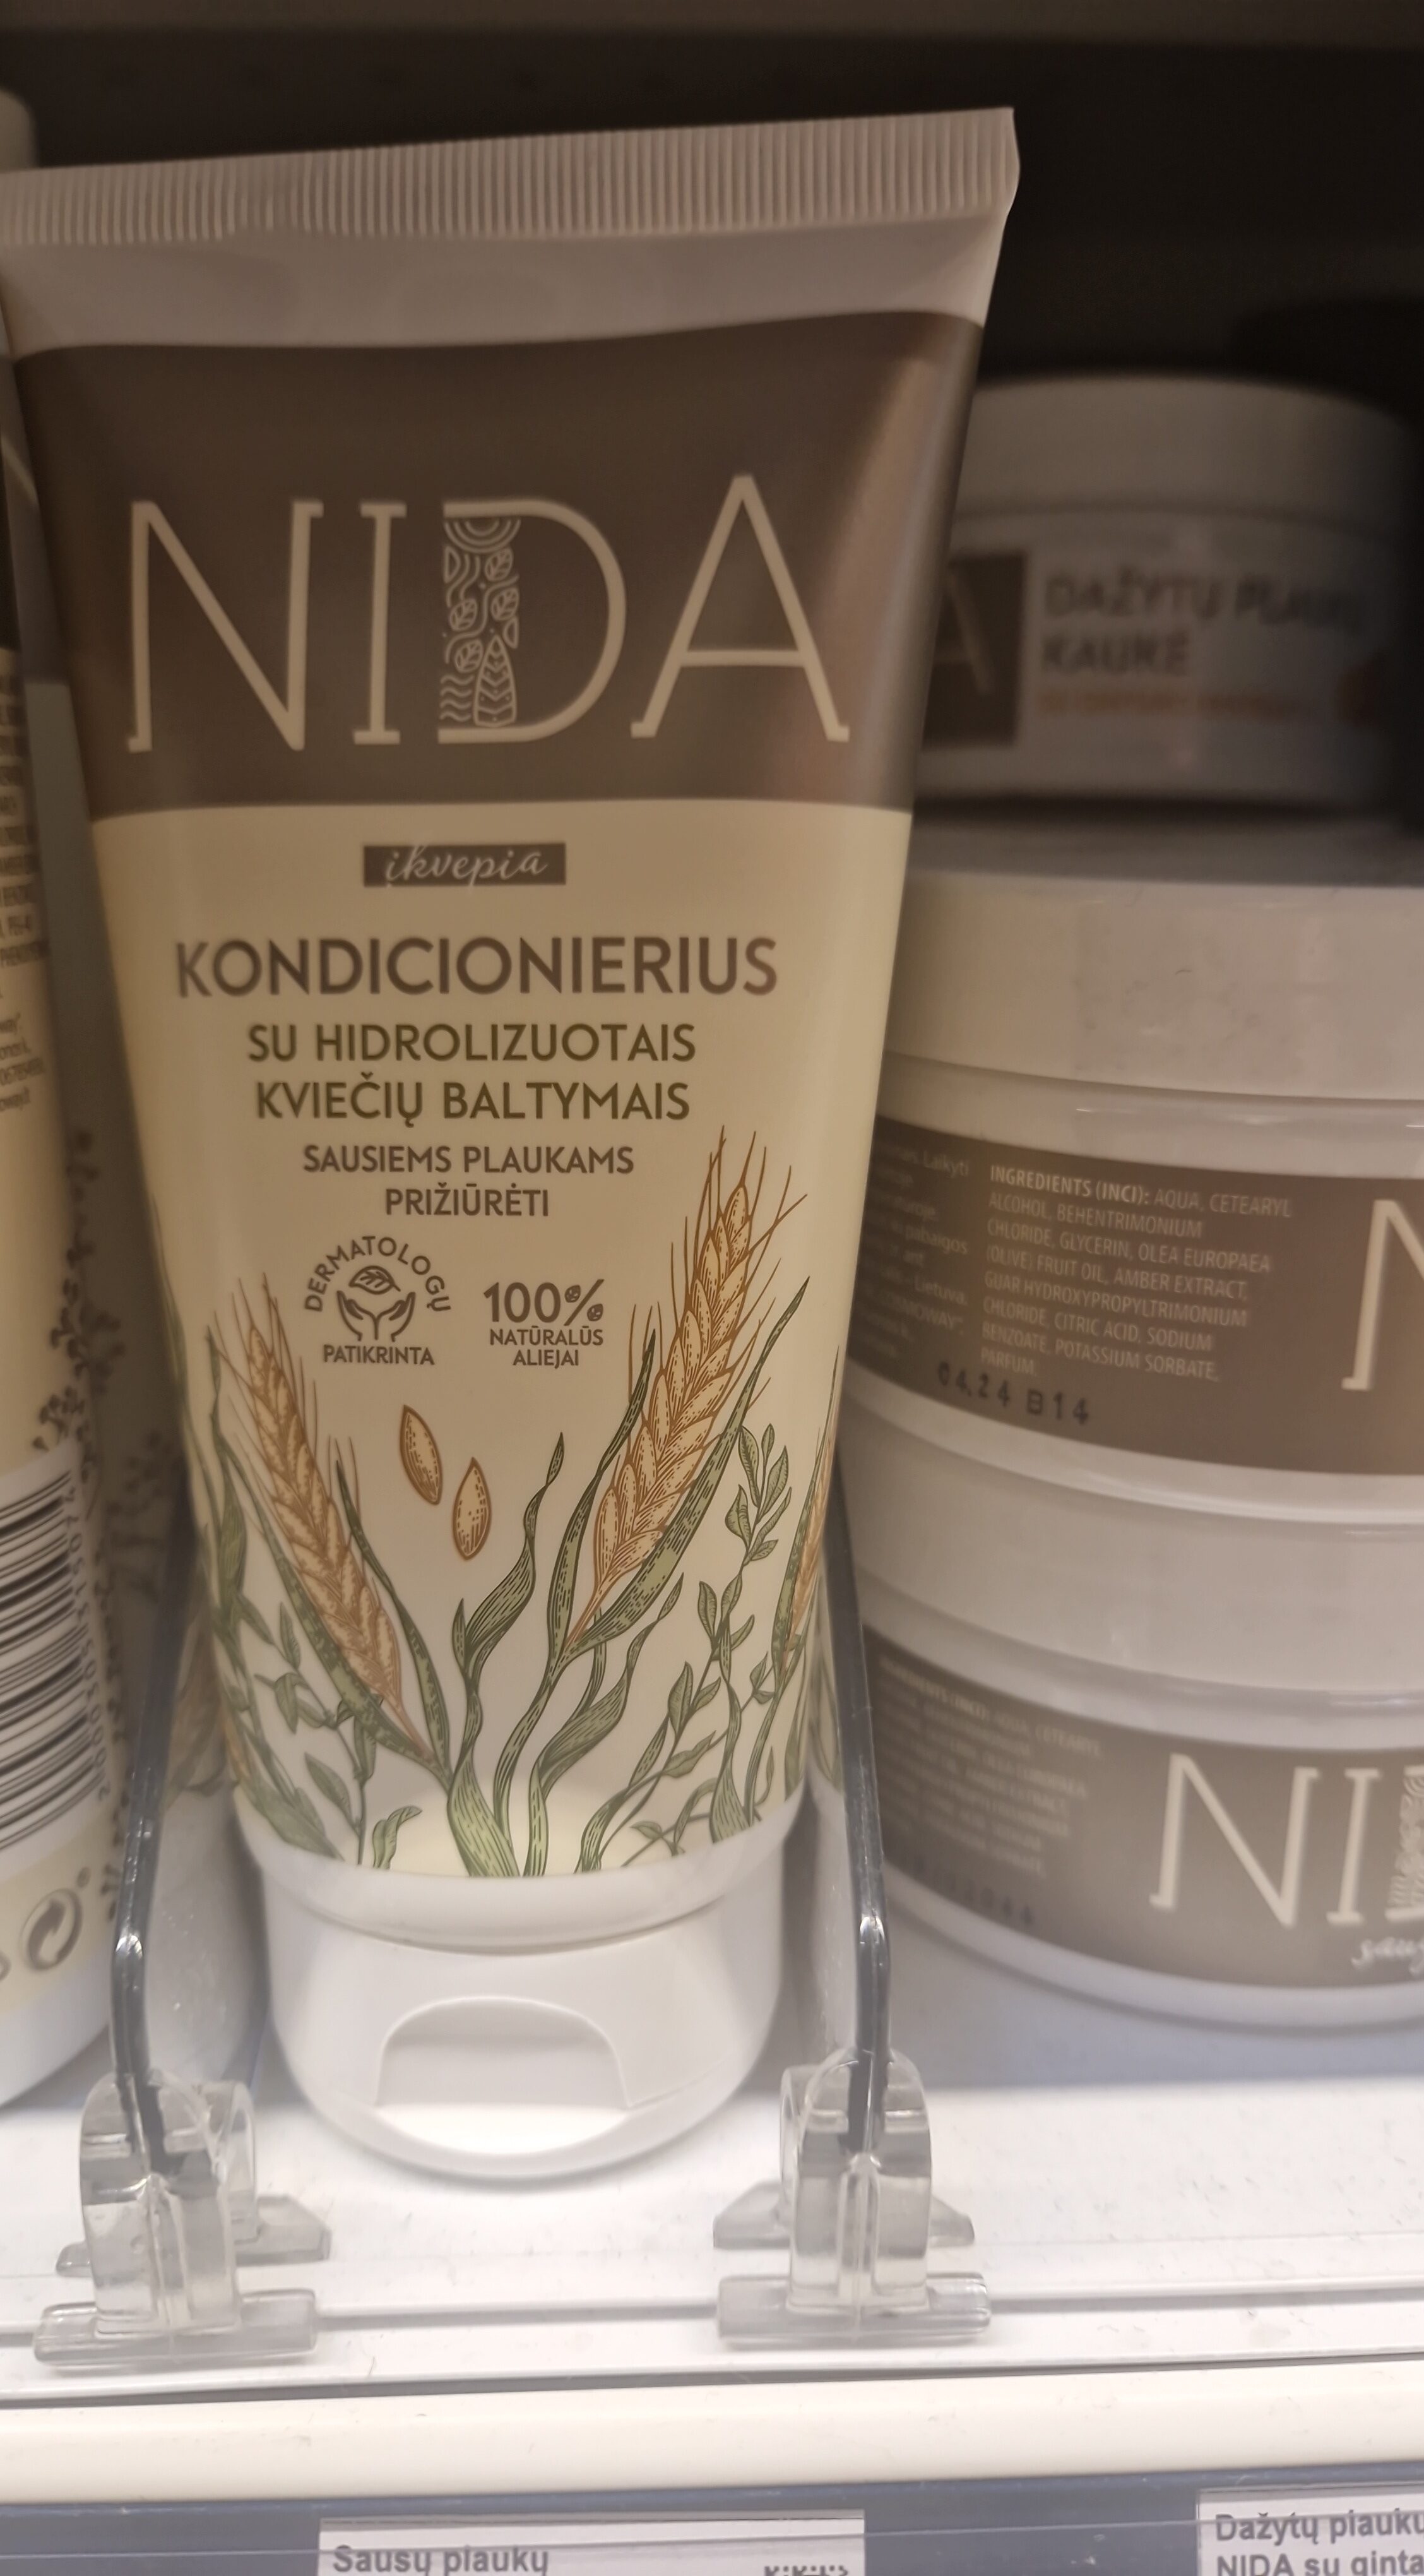 Sausų plaukų kondicionierius NIDA su kviečių baltymais - Produkt - lt